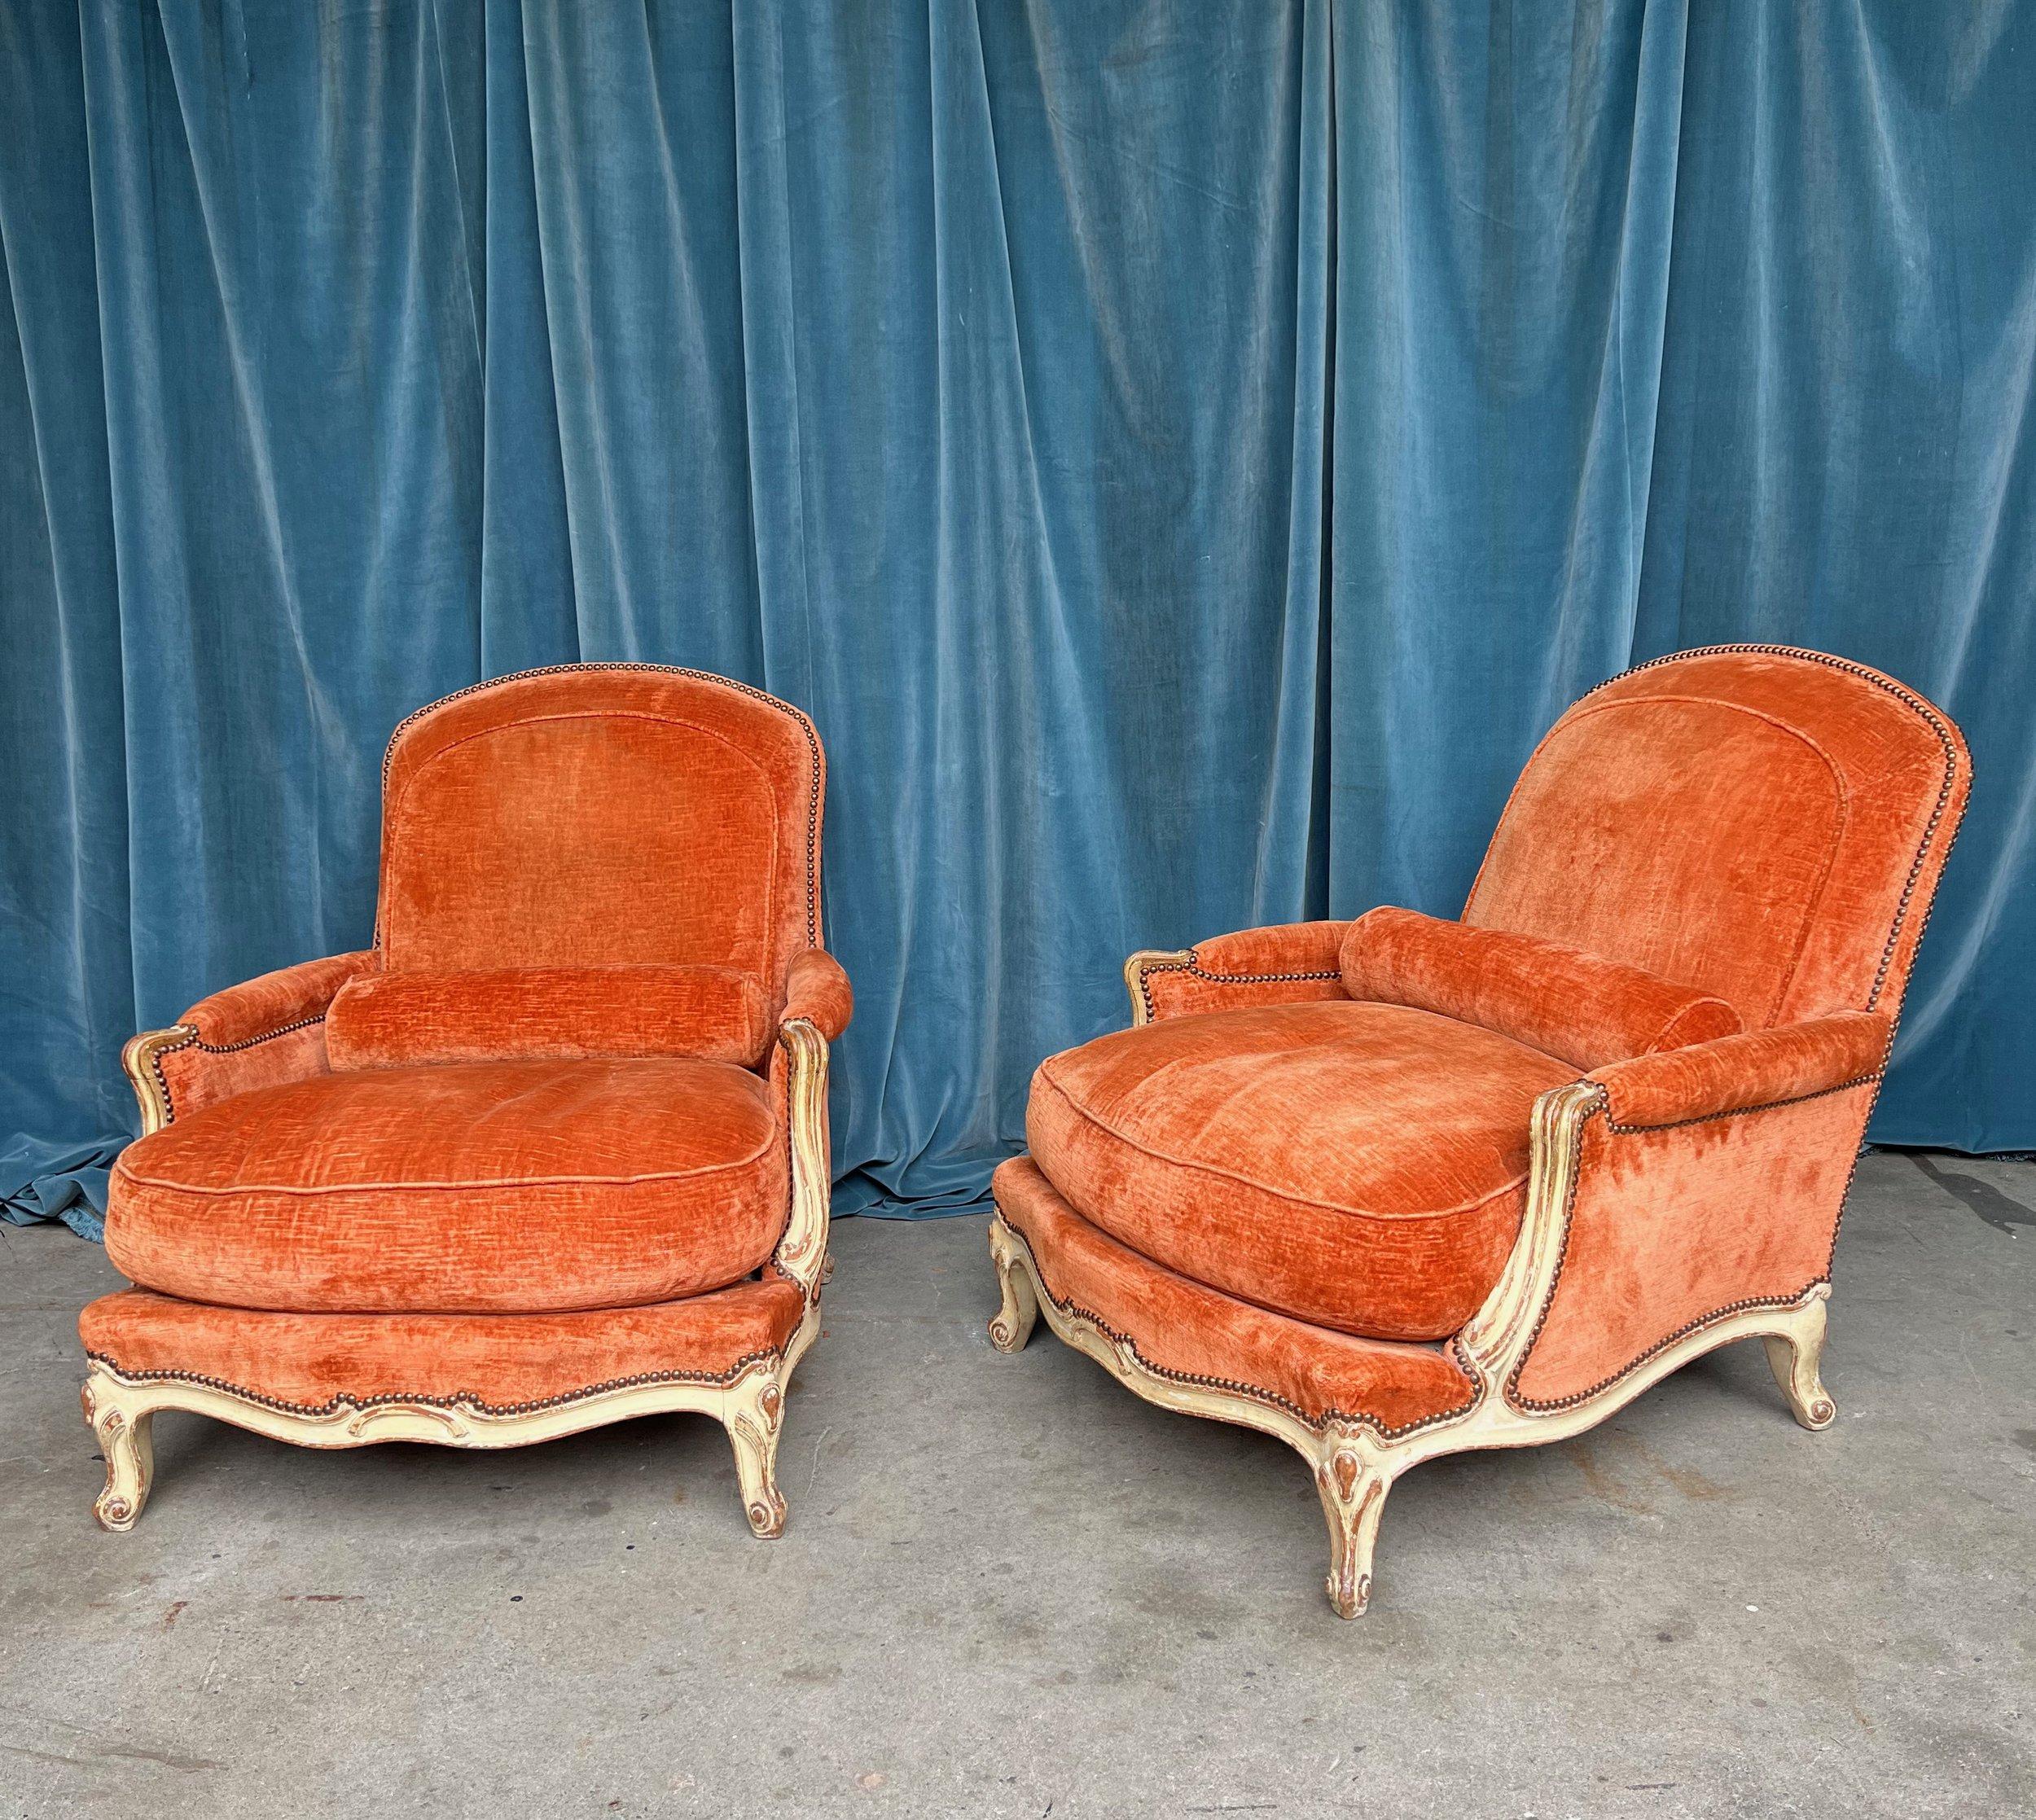 Ein großes Paar französischer Sessel aus dem 19. Jahrhundert, gepolstert mit zerknittertem orangefarbenem Samt und Cabriole-Beinen im Louis XV-Stil. Tauchen Sie ein in die Opulenz des französischen Designs mit diesem exquisiten Paar großformatiger